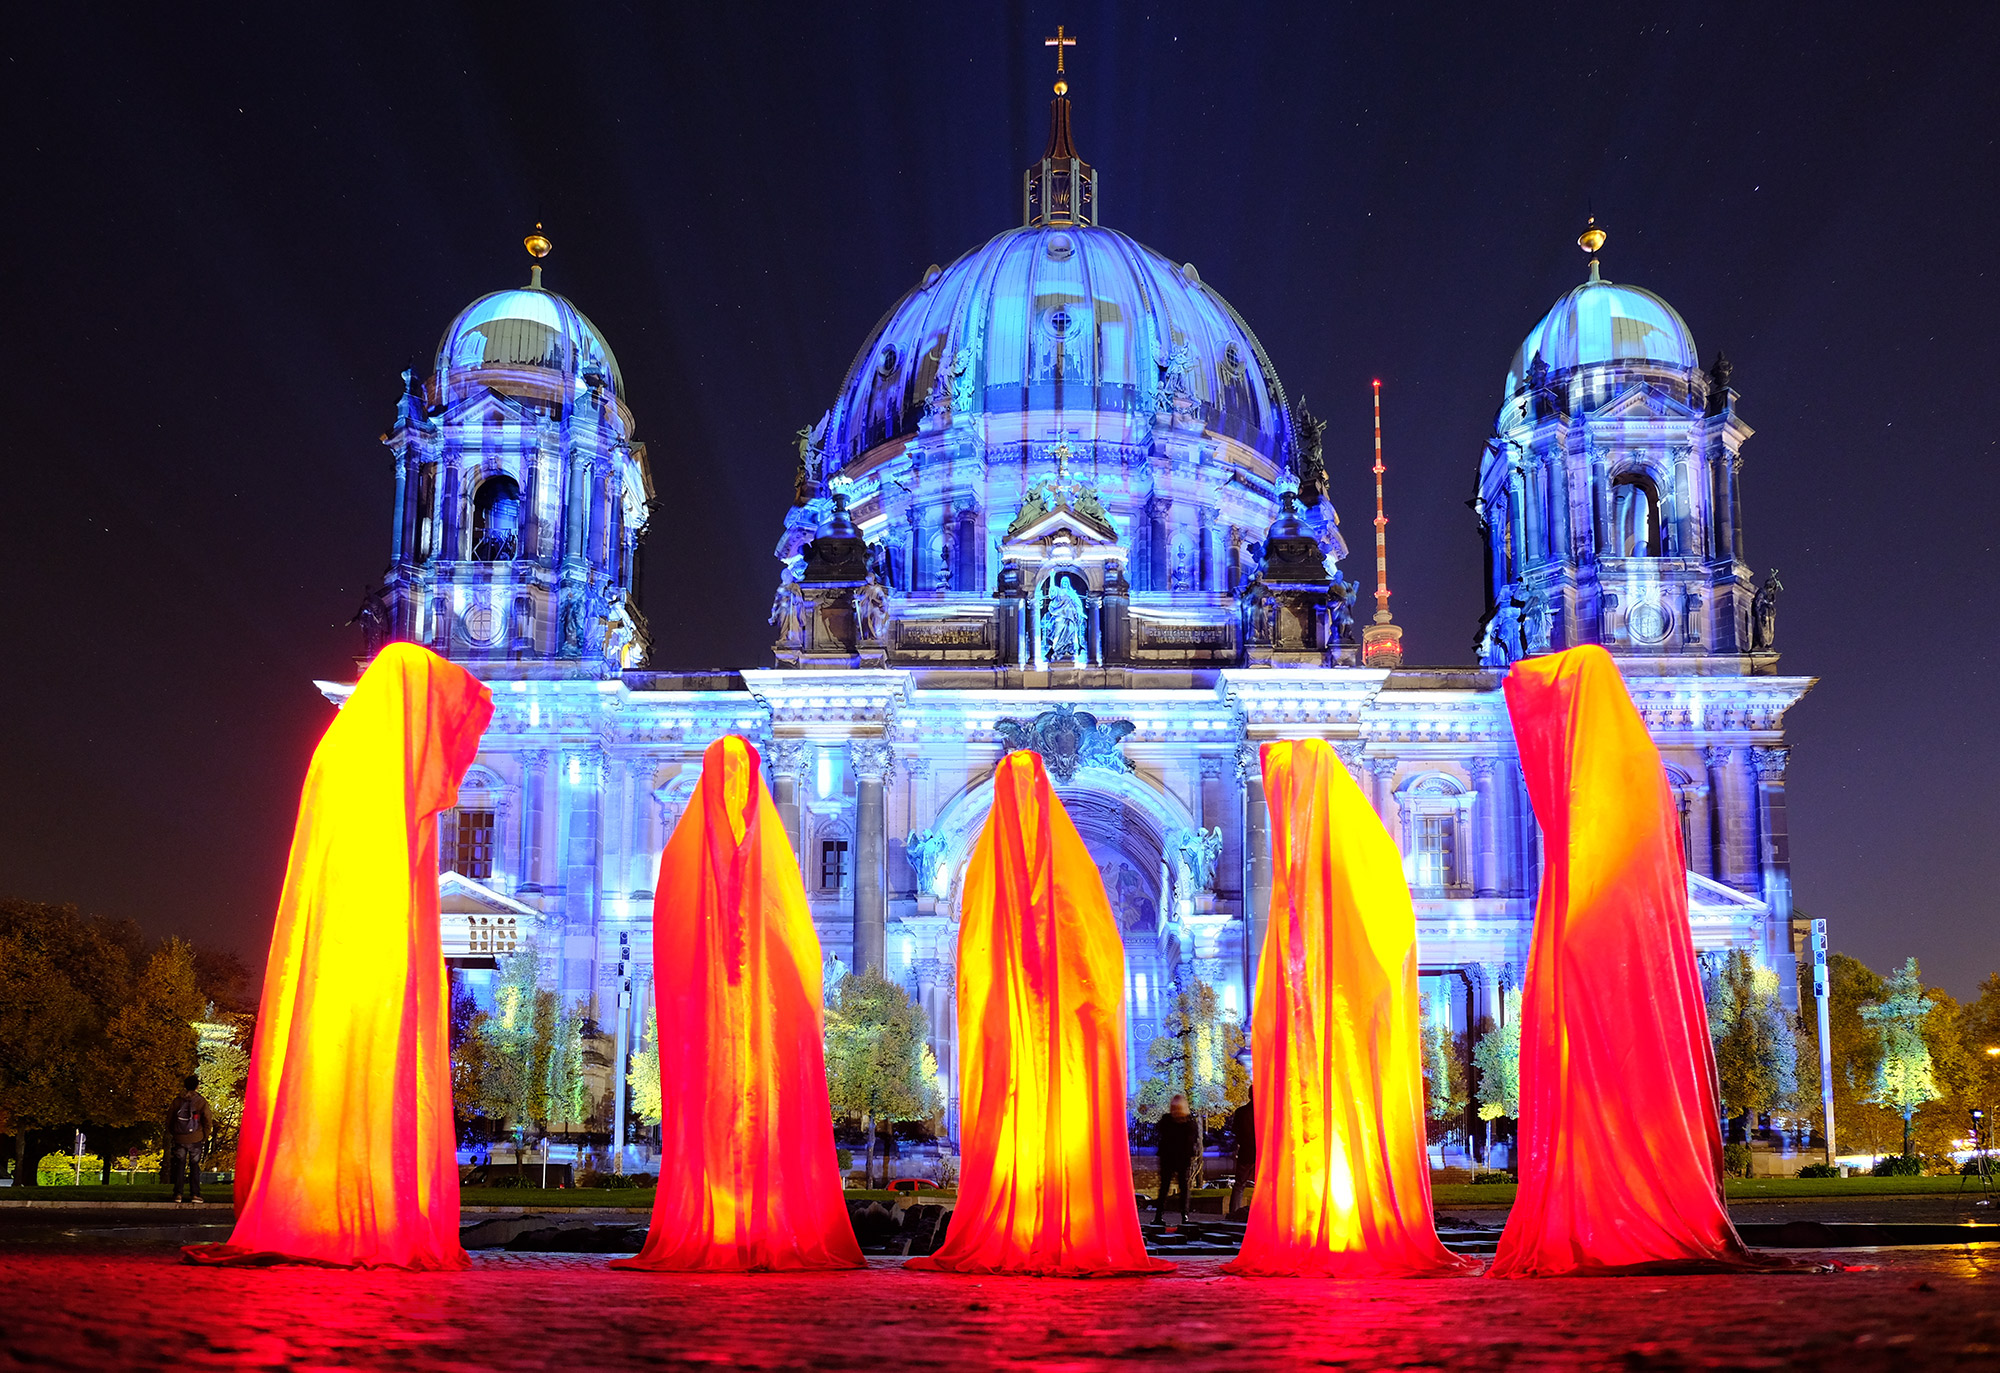 festival-of-lights-berlin-lightart-event-lumina-glow-modern-sculpture-statue-gallery-museum-5750.jpg